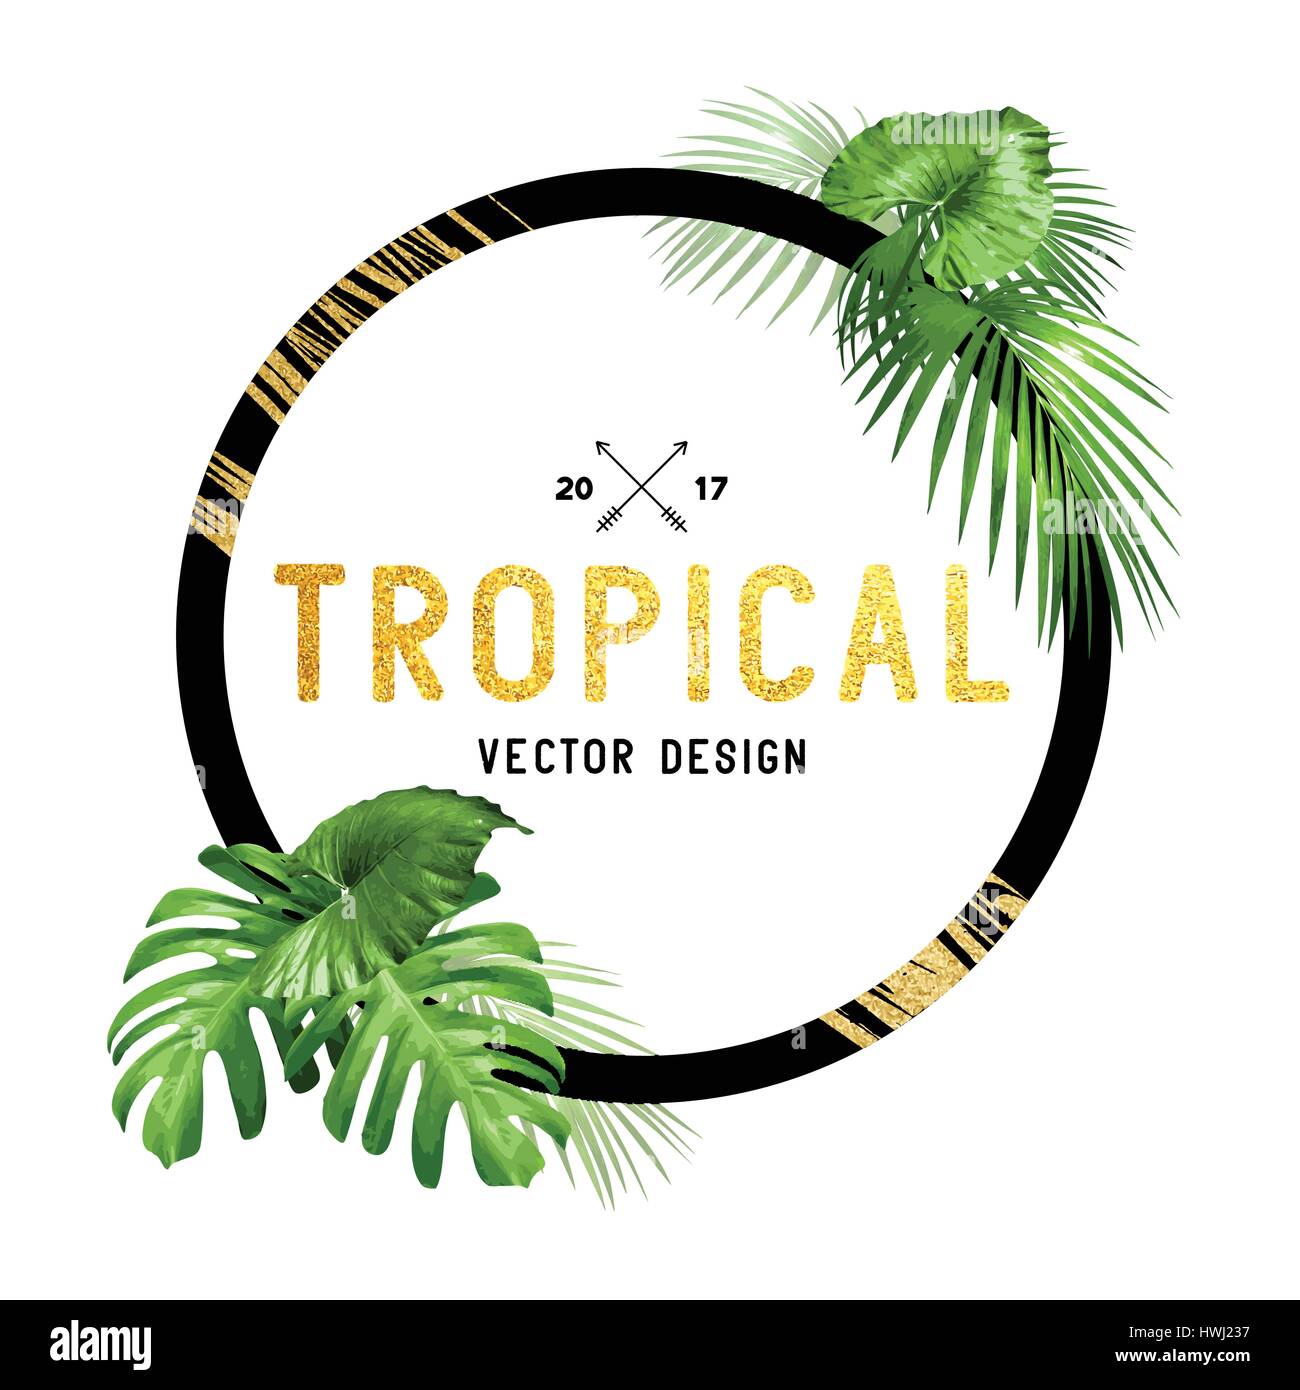 Schwarz und Gold tropischen Rahmendesign mit verschiedenen Plam Blätter säumen. Vektor-illustration Stock Vektor